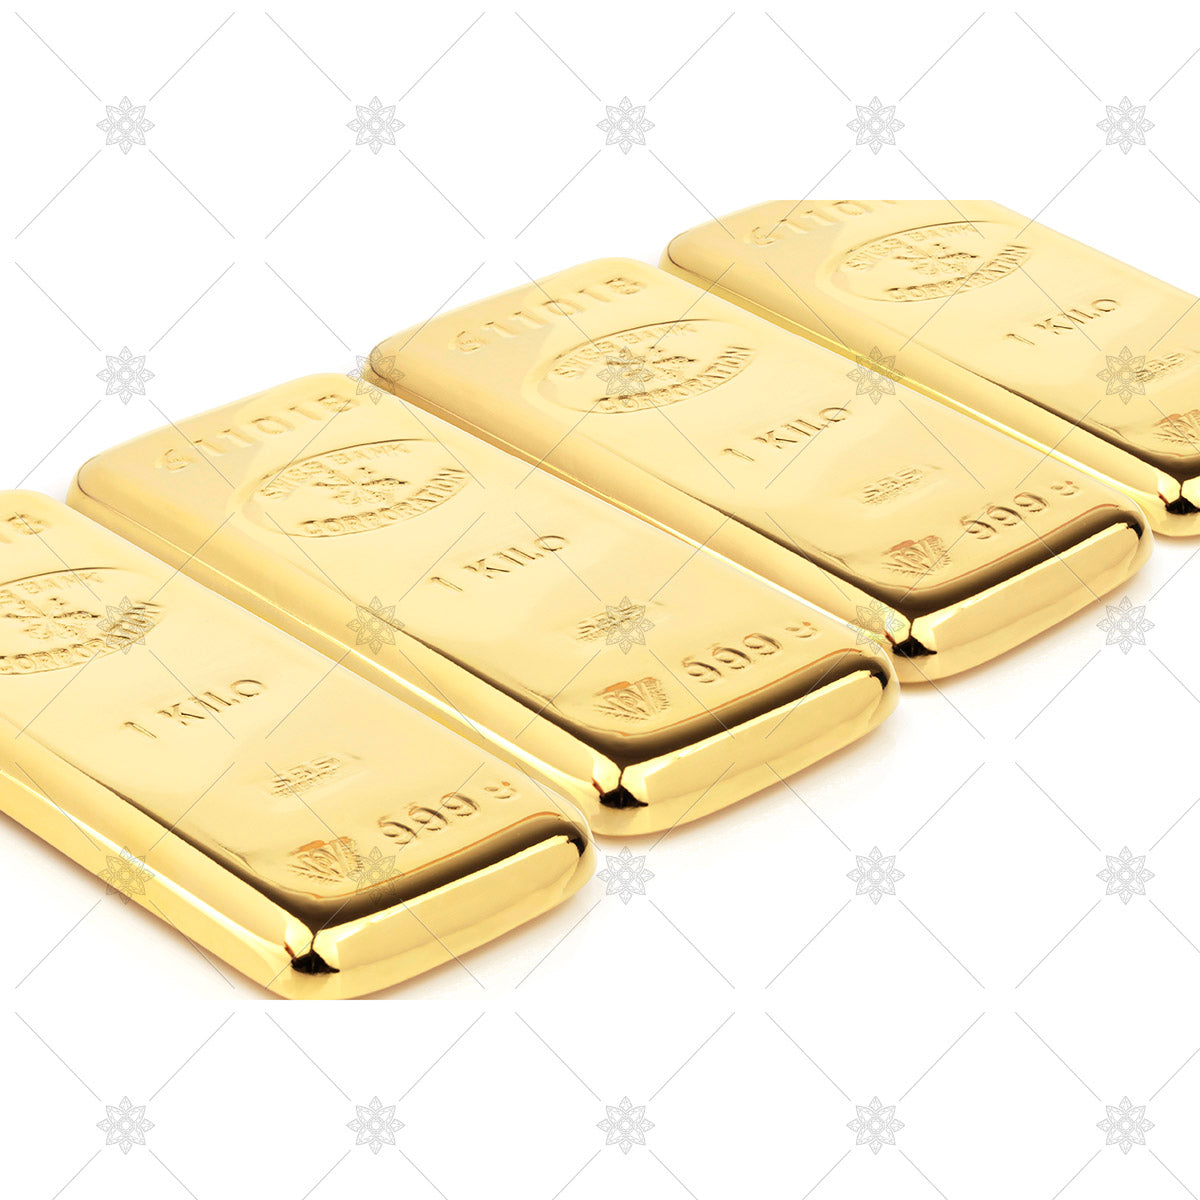 Row of three gold bullion bars